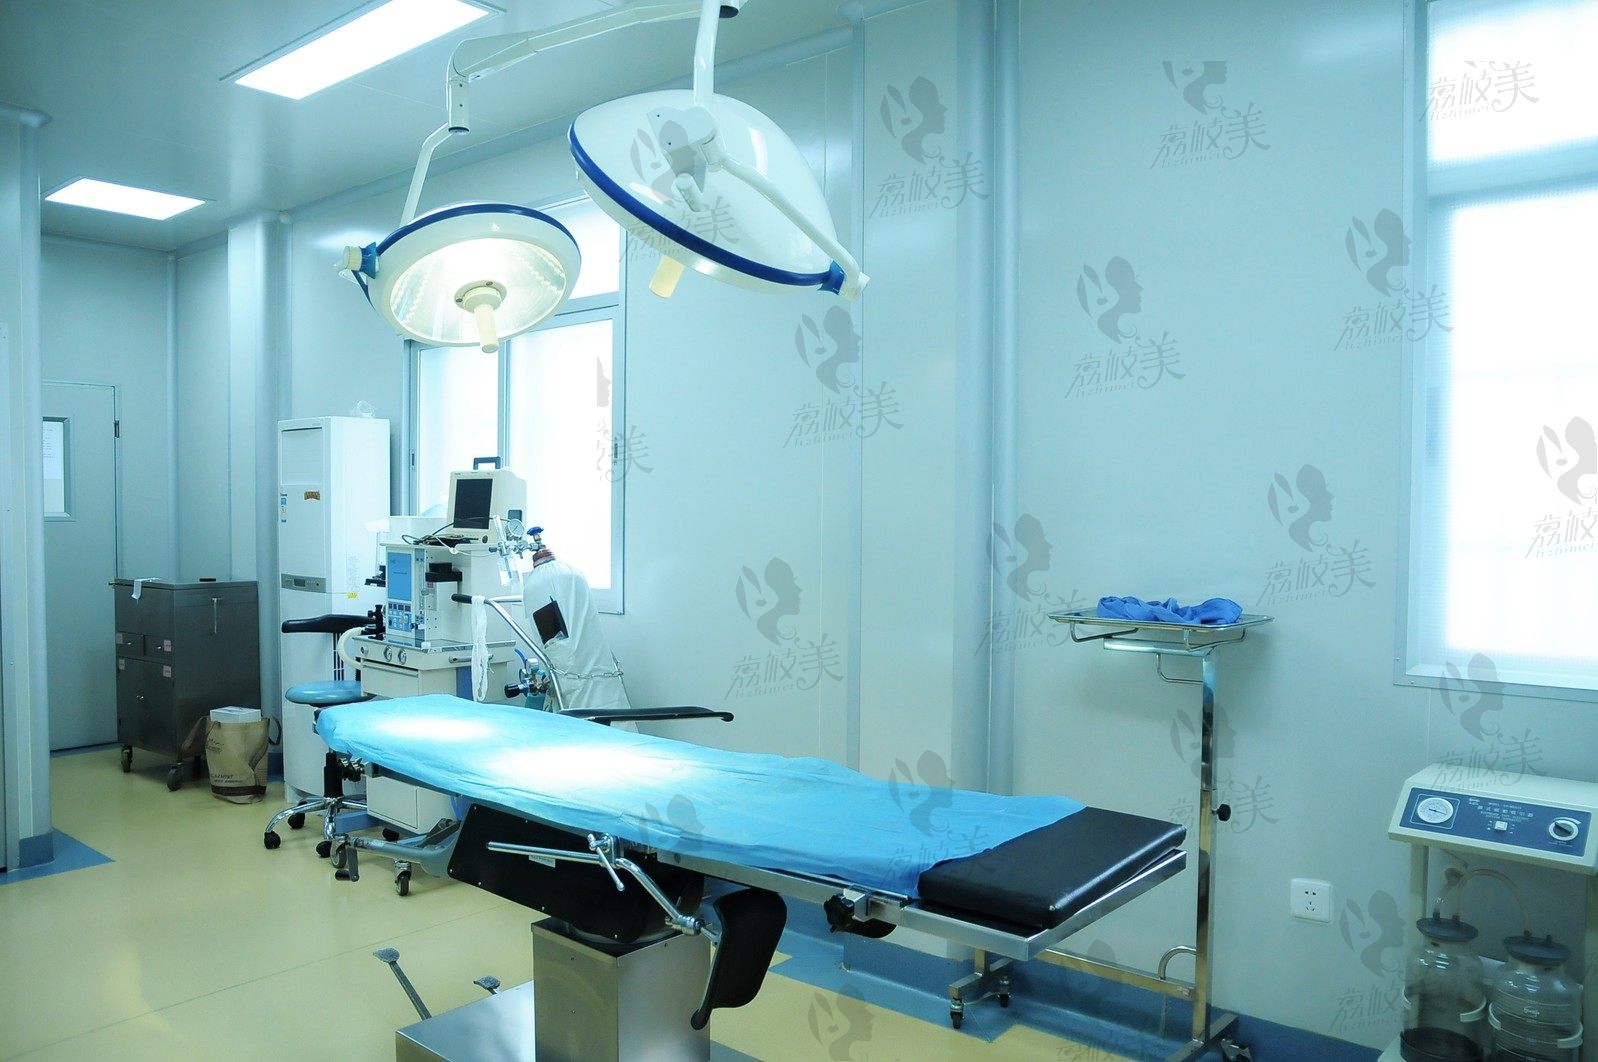 广州市荔湾区人民医院整形中心千层流手术室环境